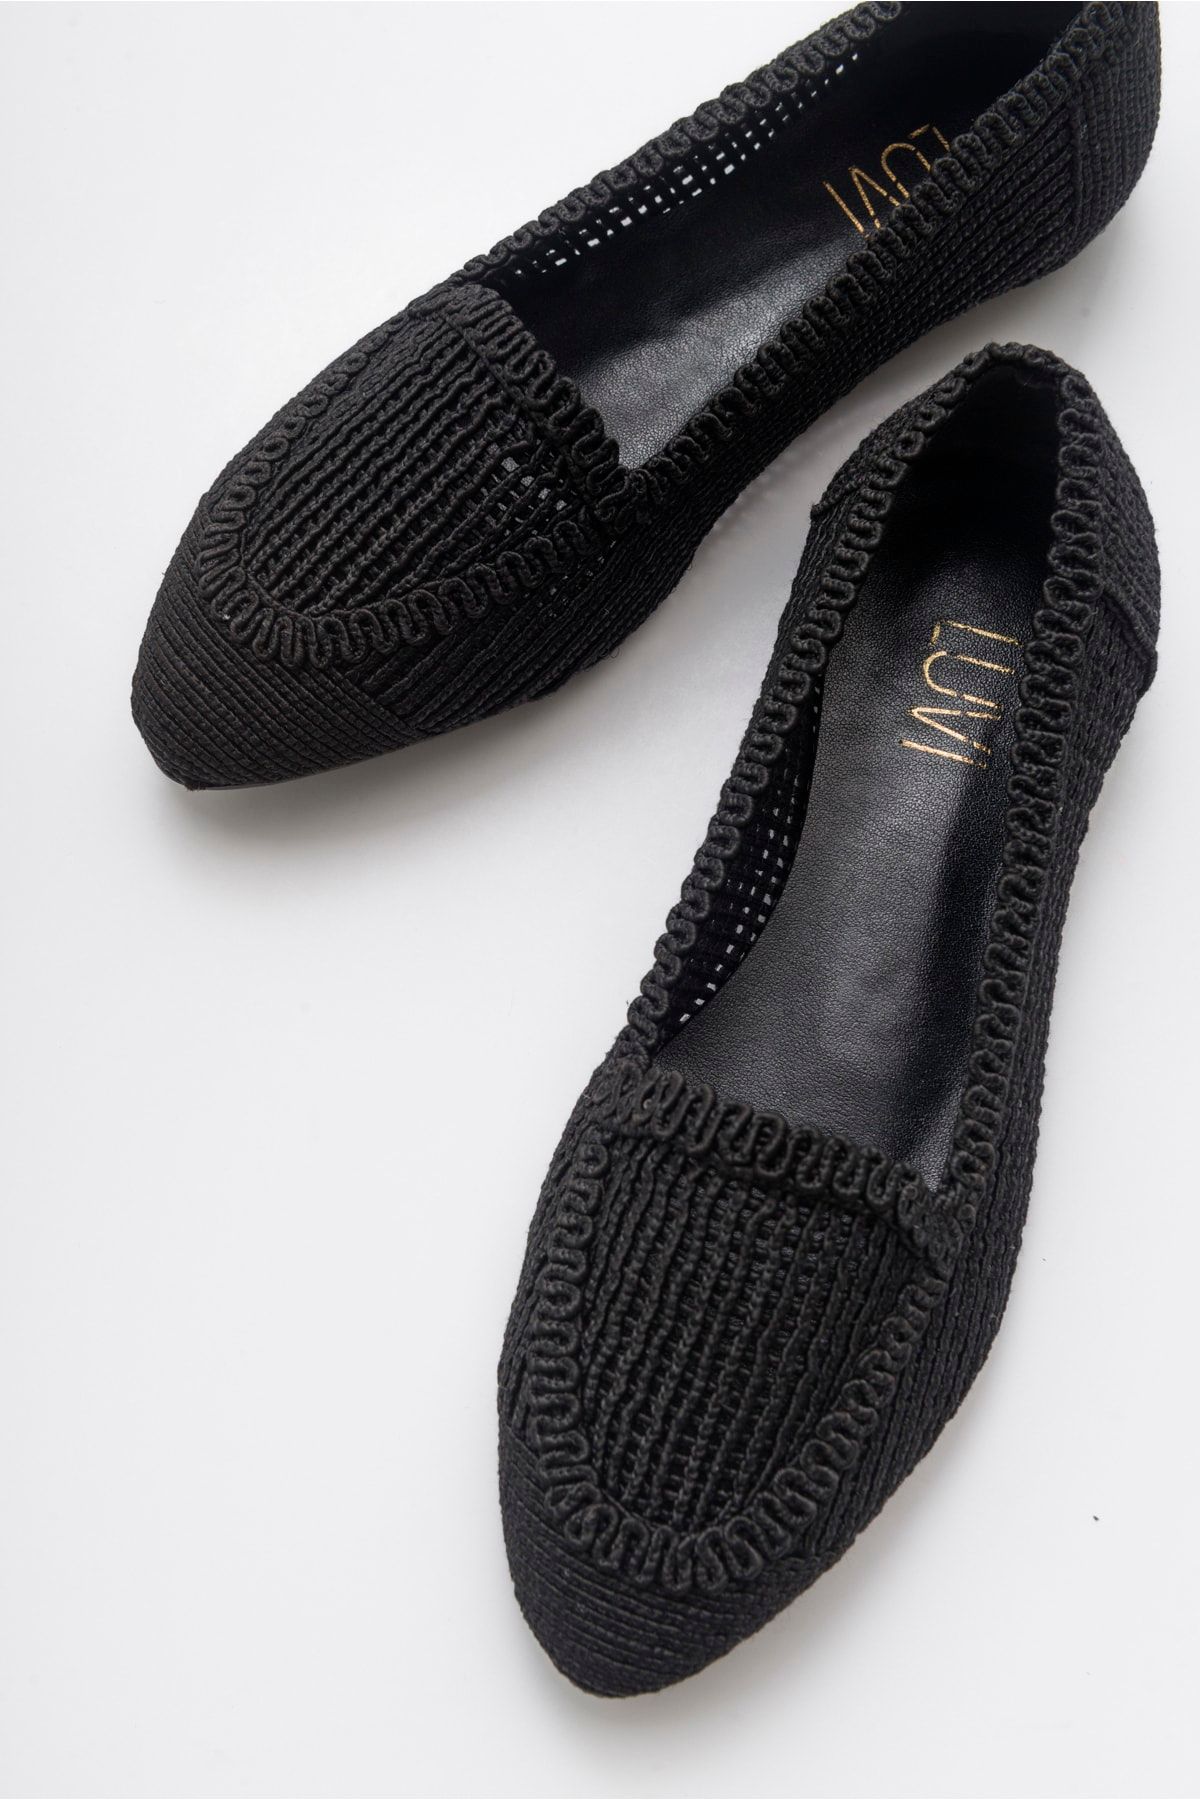 luvishoes Kadın Siyah Örme Babet Ayakkabı 101